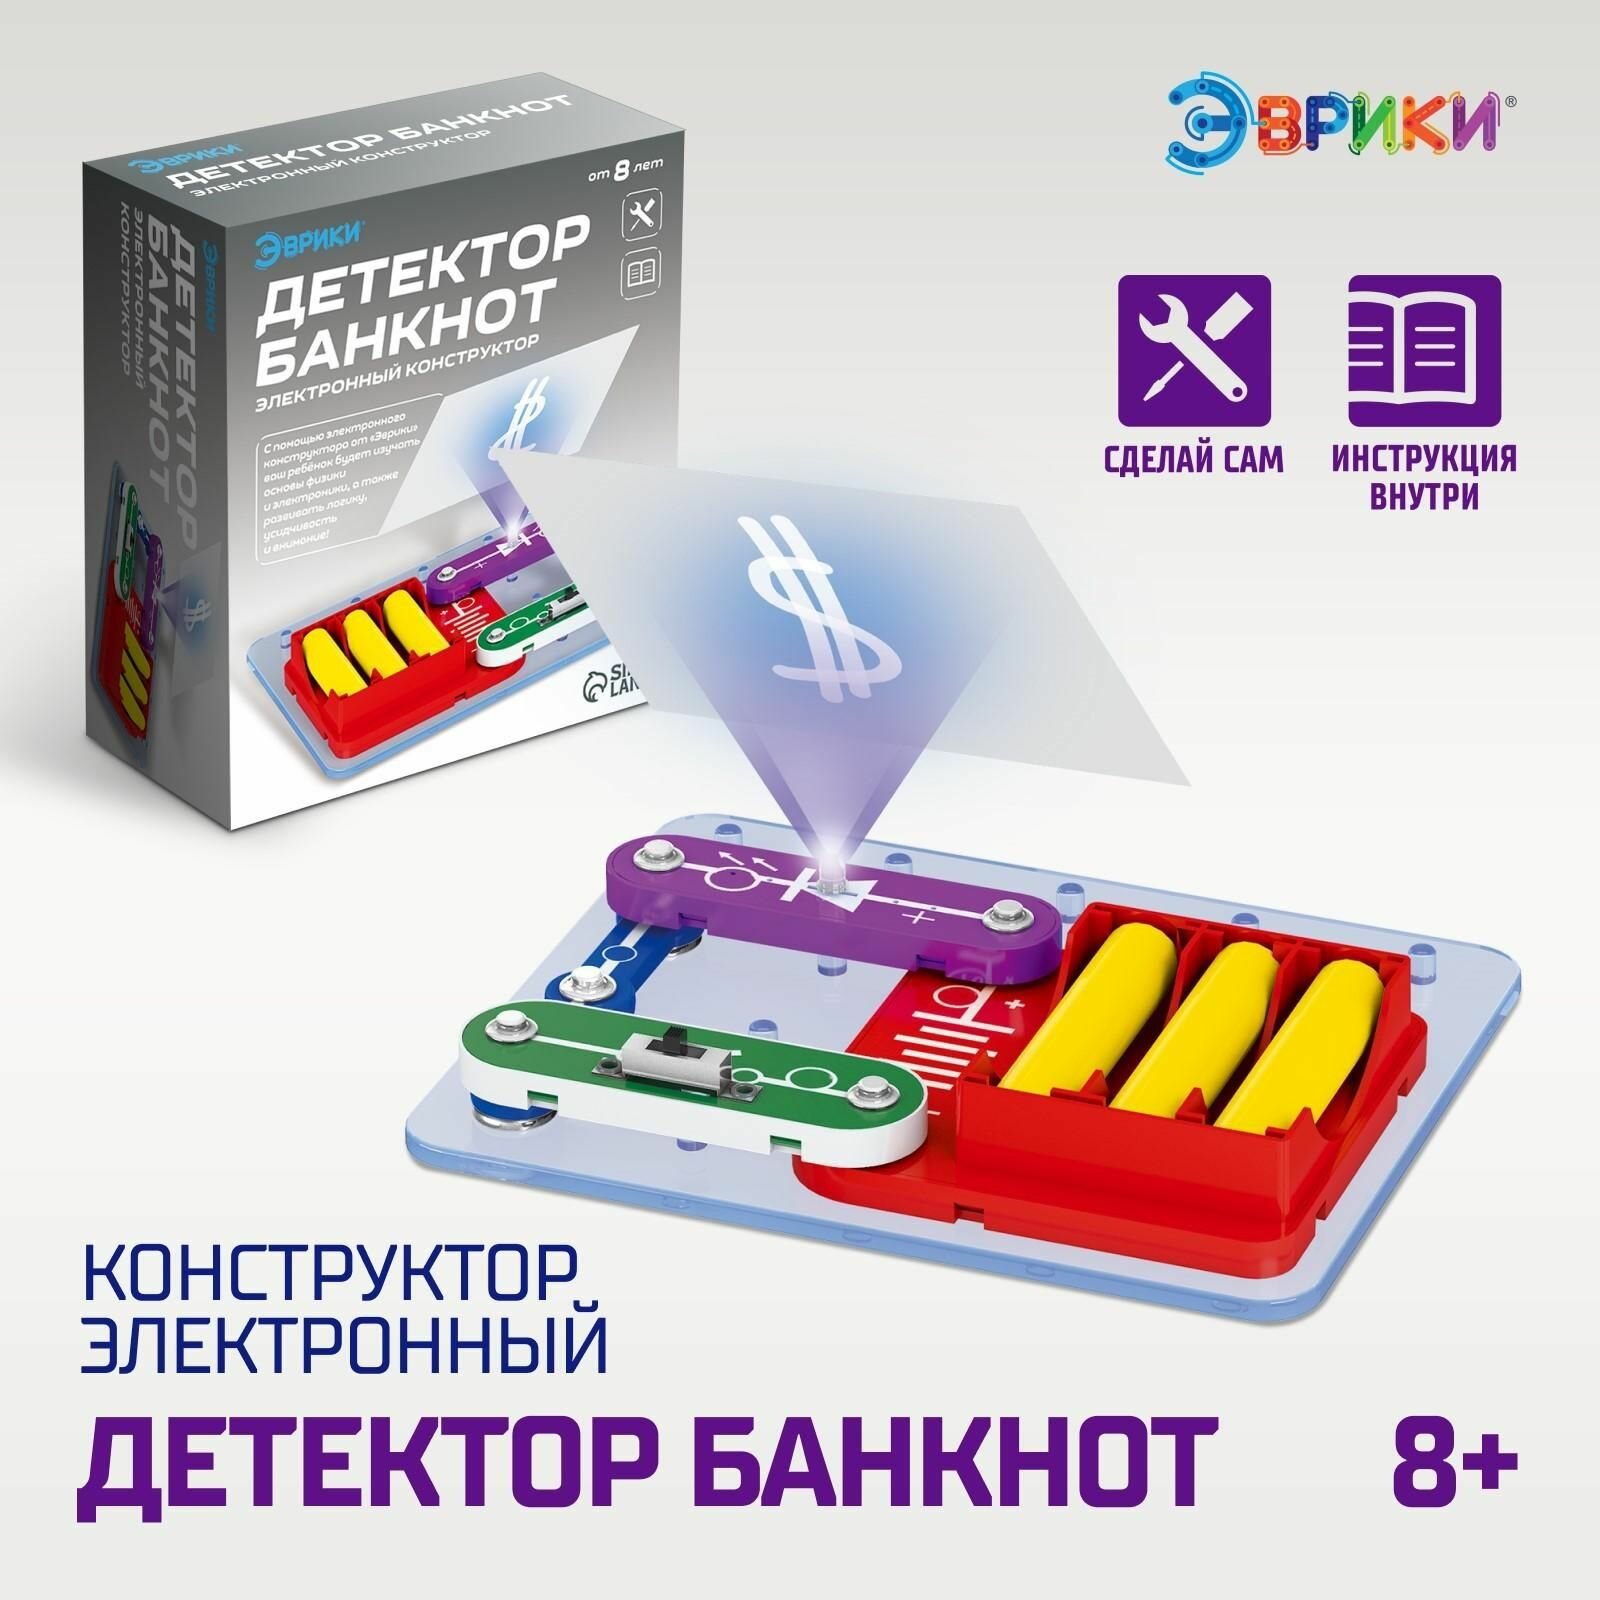 Электронный конструктор Детектор банкнот 4 детали + ручка